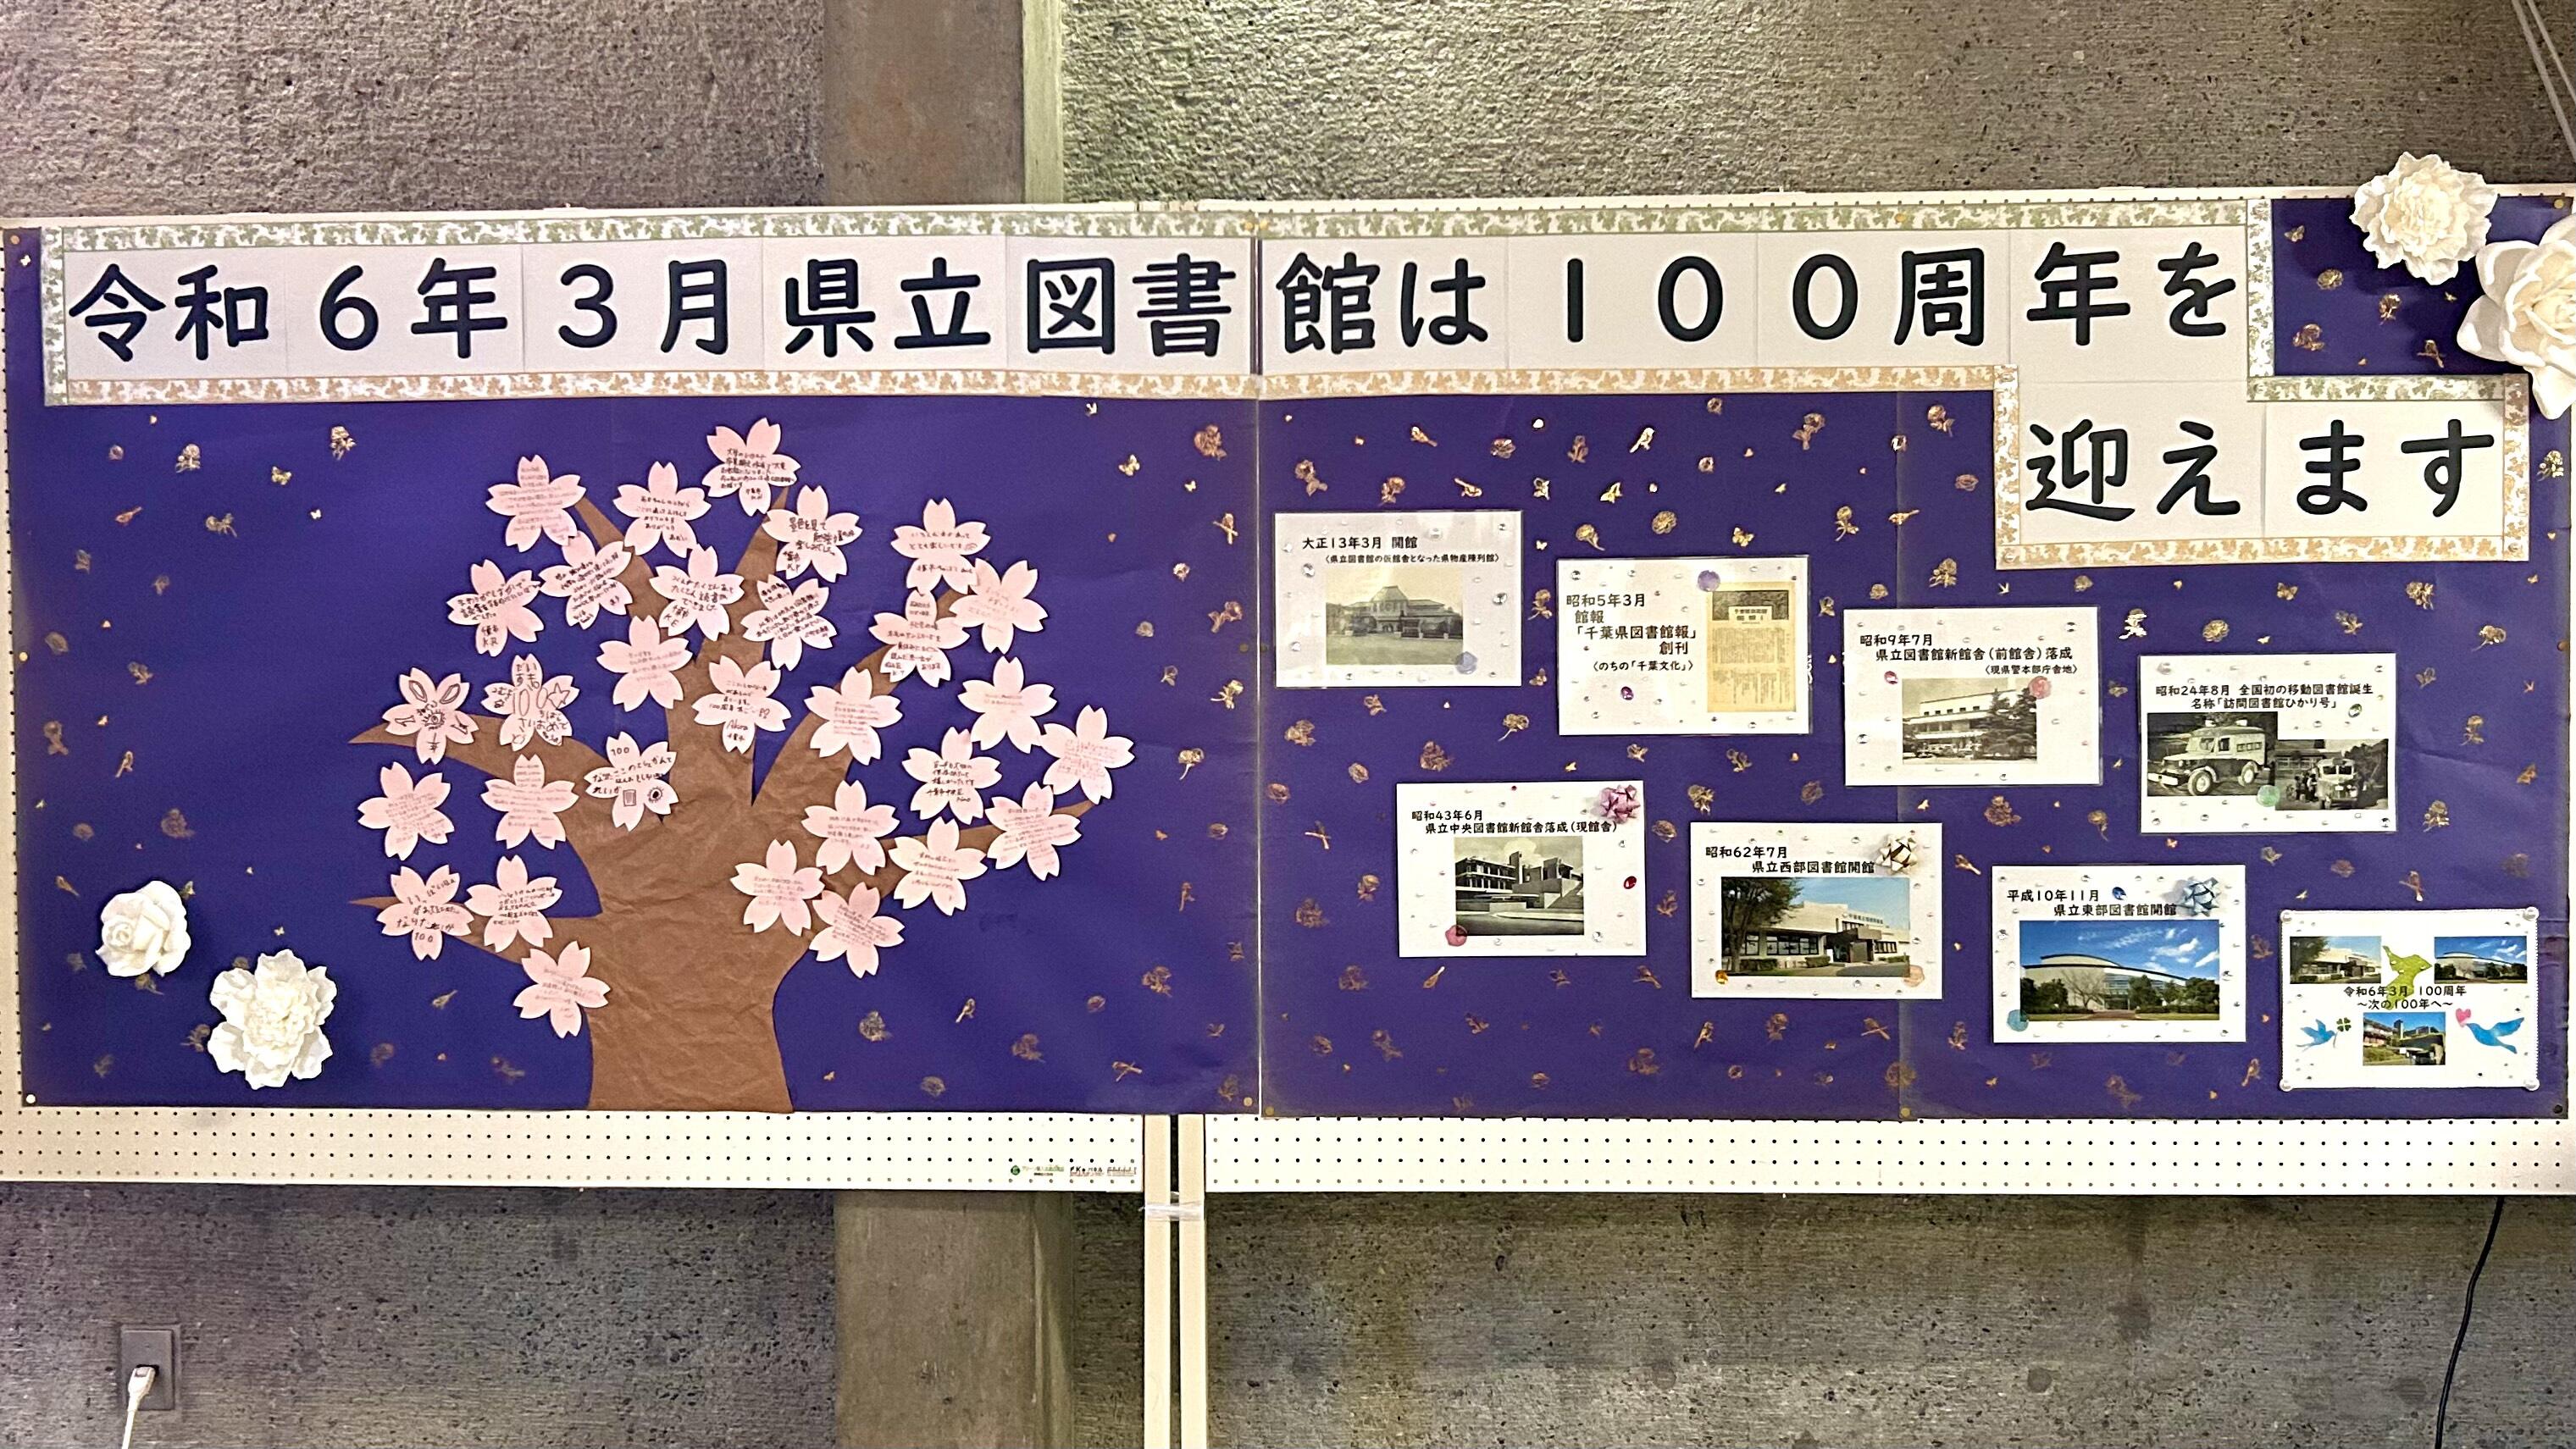 図書館の思い出・100年のあゆみを掲示している掲示板の写真。掲示板には桜の木が描かれている。桜の枝に桜の花のメッセージカードを貼りつけていく。